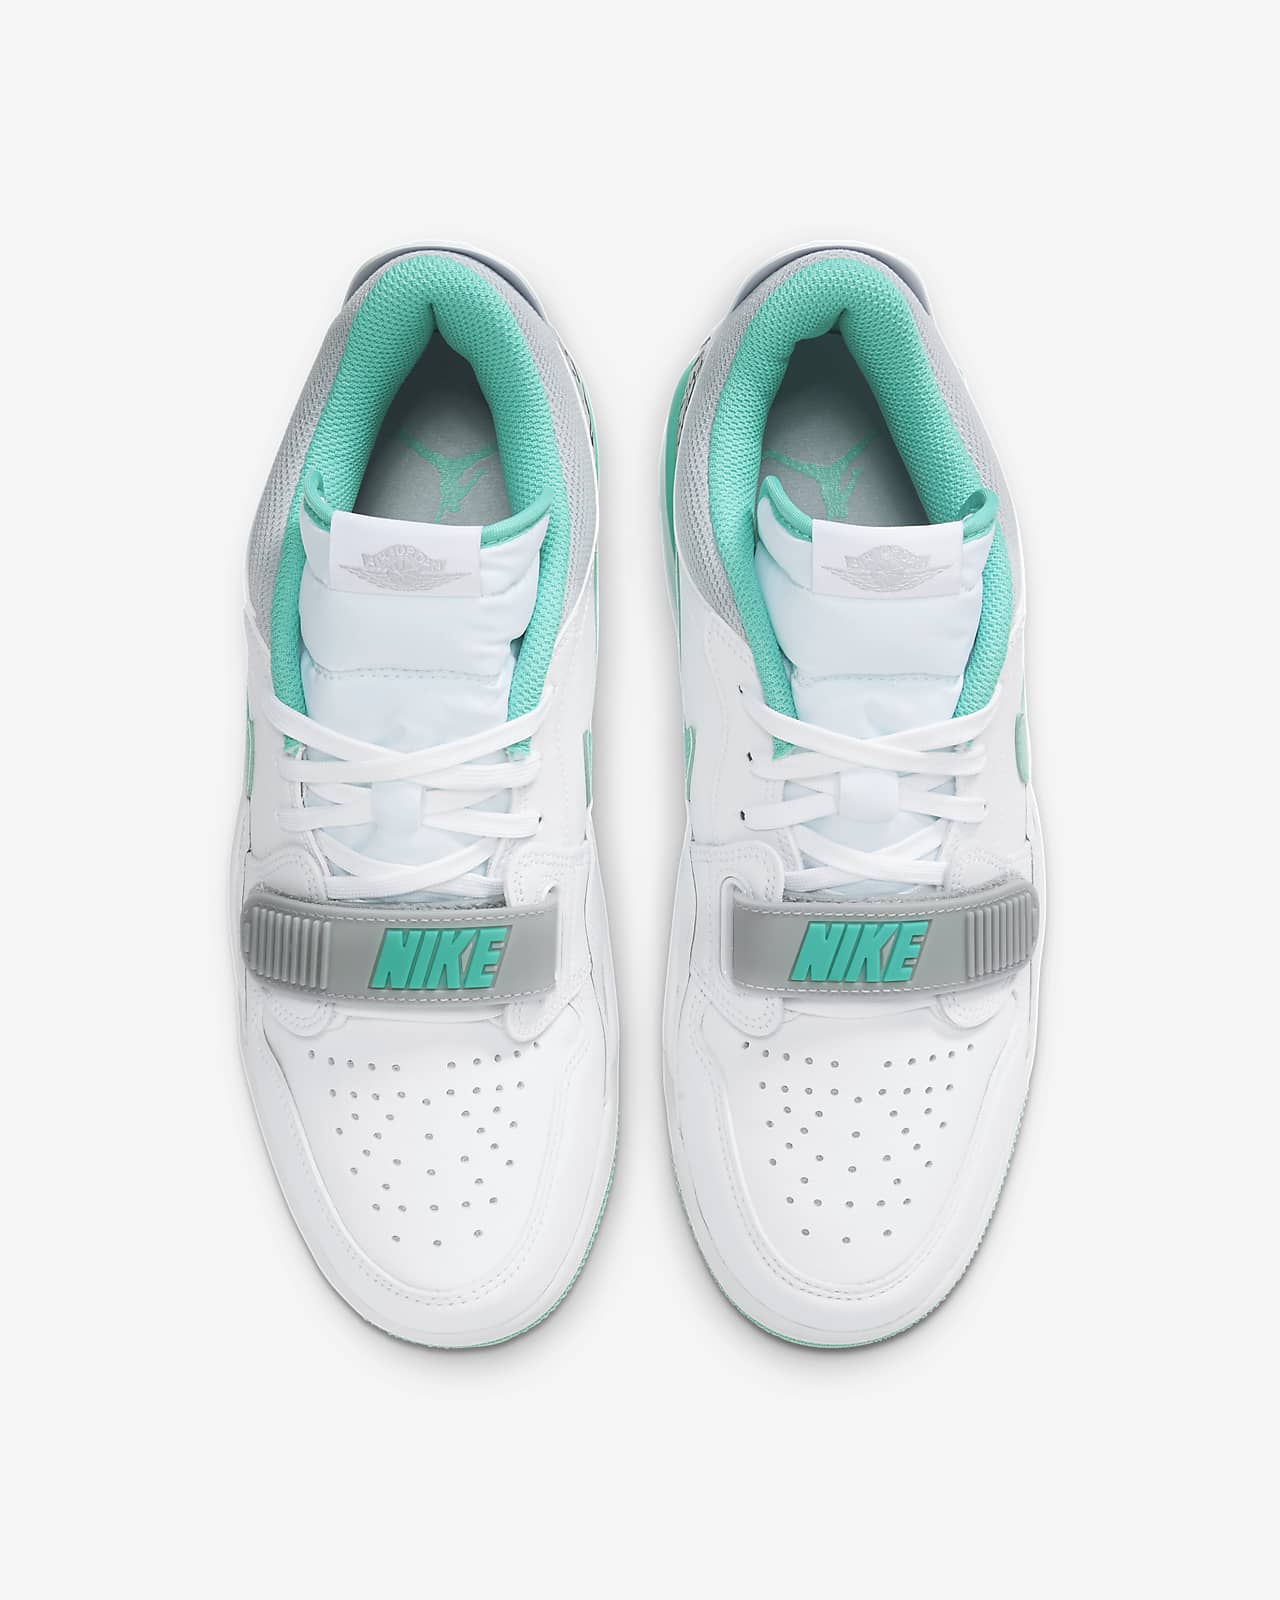 Air Jordan Legacy 312 Low Men's Shoes. Nike IN